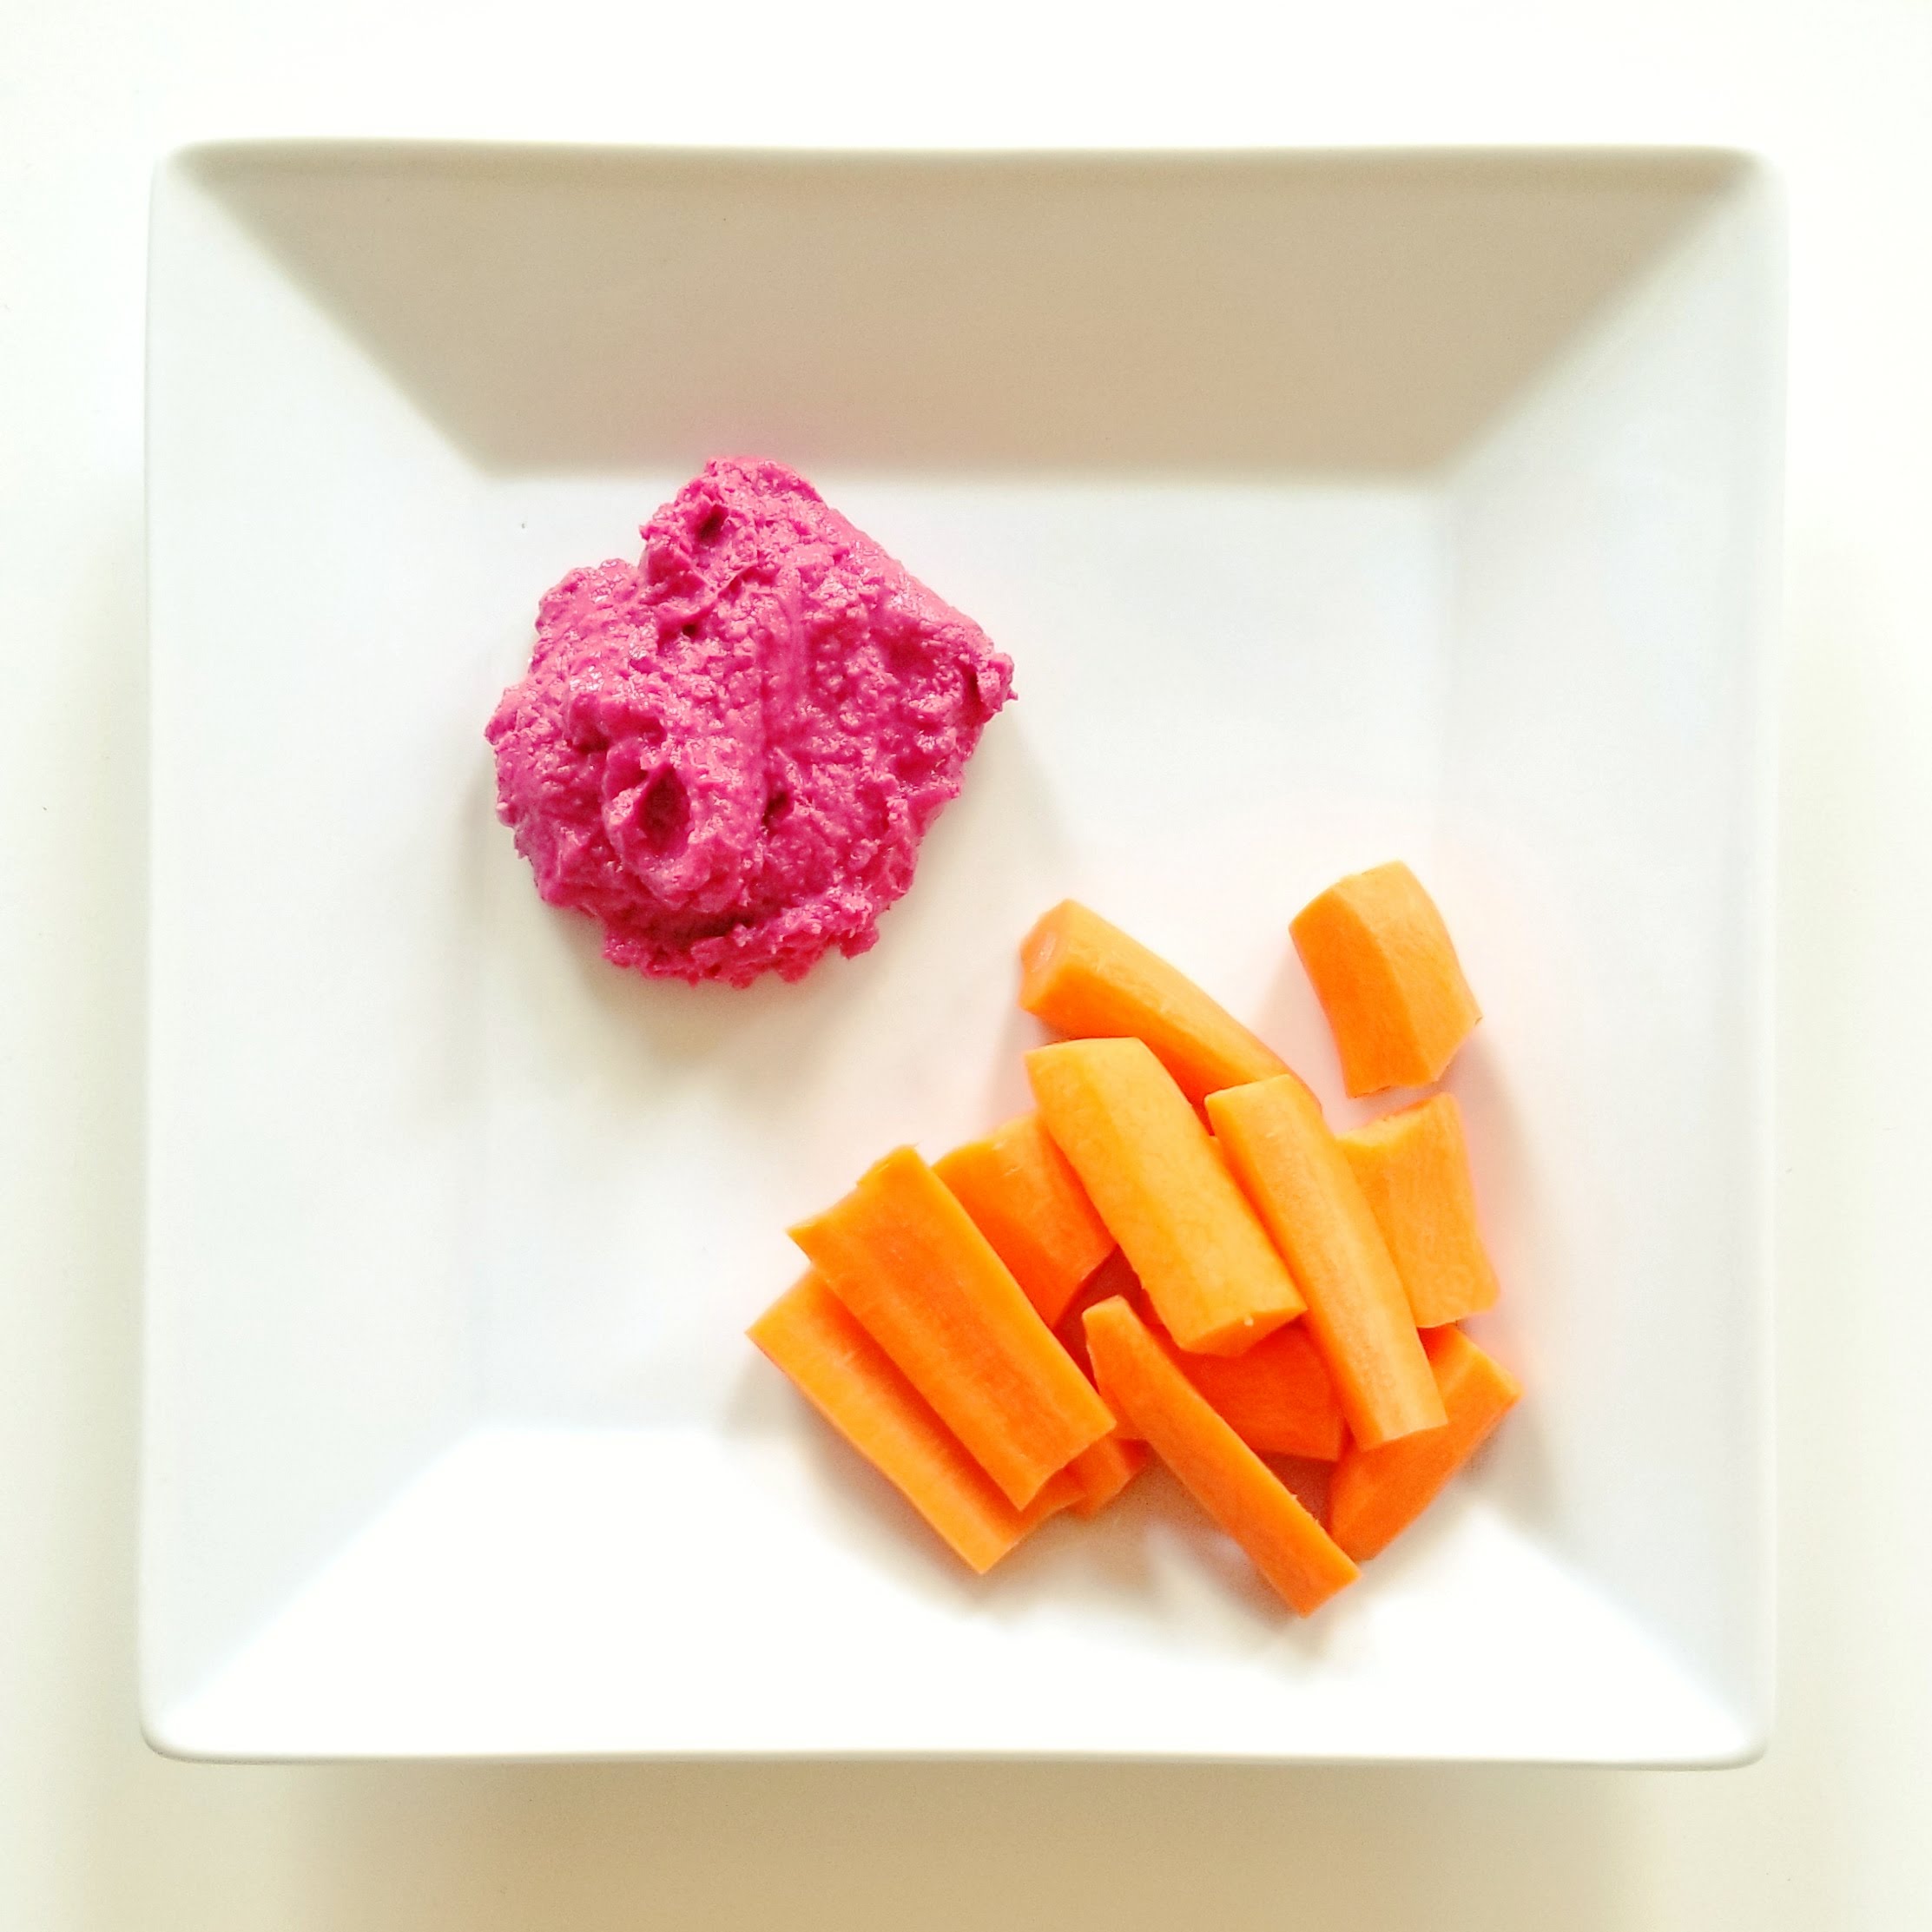 healthful vegan diet plan hummus carrots